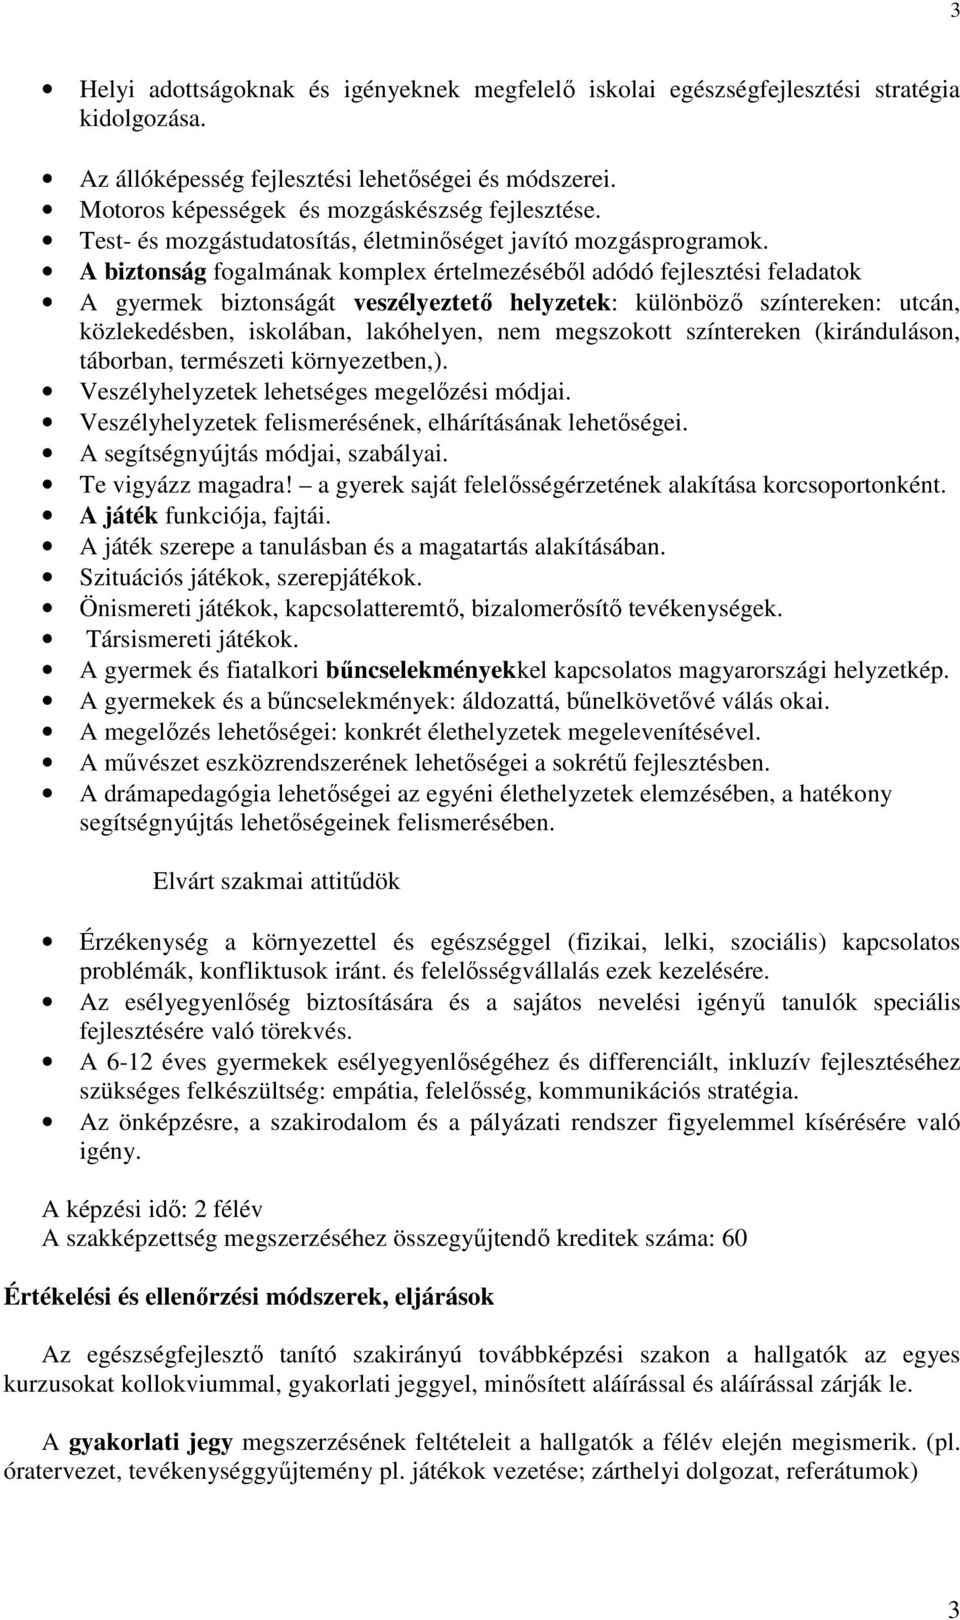 Eötvös Loránd Tudományegyetem Tanító- és Óvóképzı Fıiskolai Kar.  Természettudományi Tanszék. Egészségfejlesztı modul - PDF Free Download